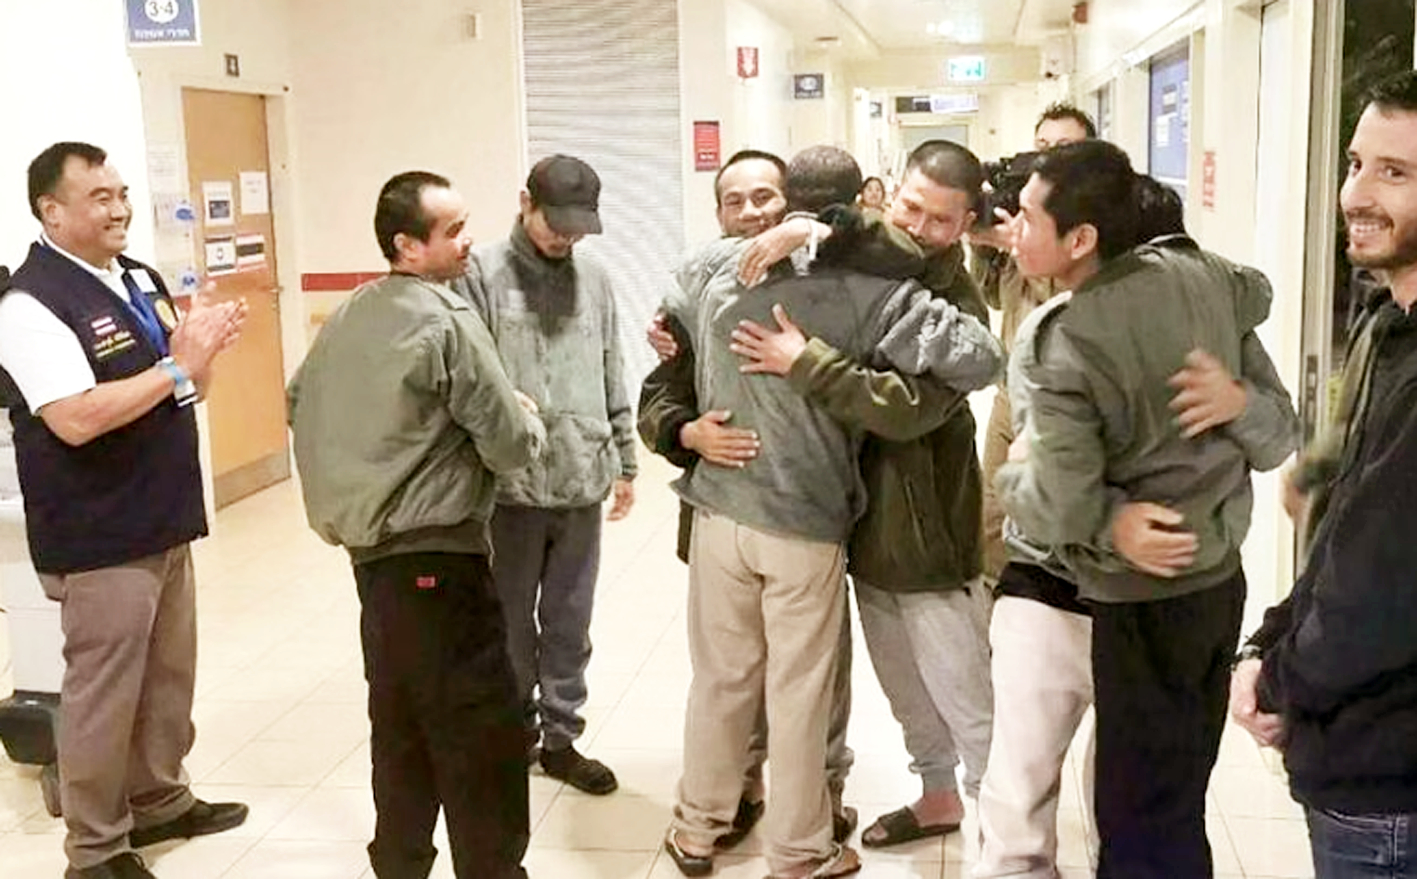 Những công dân Thái Lan bị Hamas bắt làm con tin vui cười và ôm nhau tại Trung tâm Y tế Shamir ở Israel khi được trả tự do sau lệnh ngừng bắn ngày 24/11 - Ảnh: Bộ Ngoại giao Thái Lan